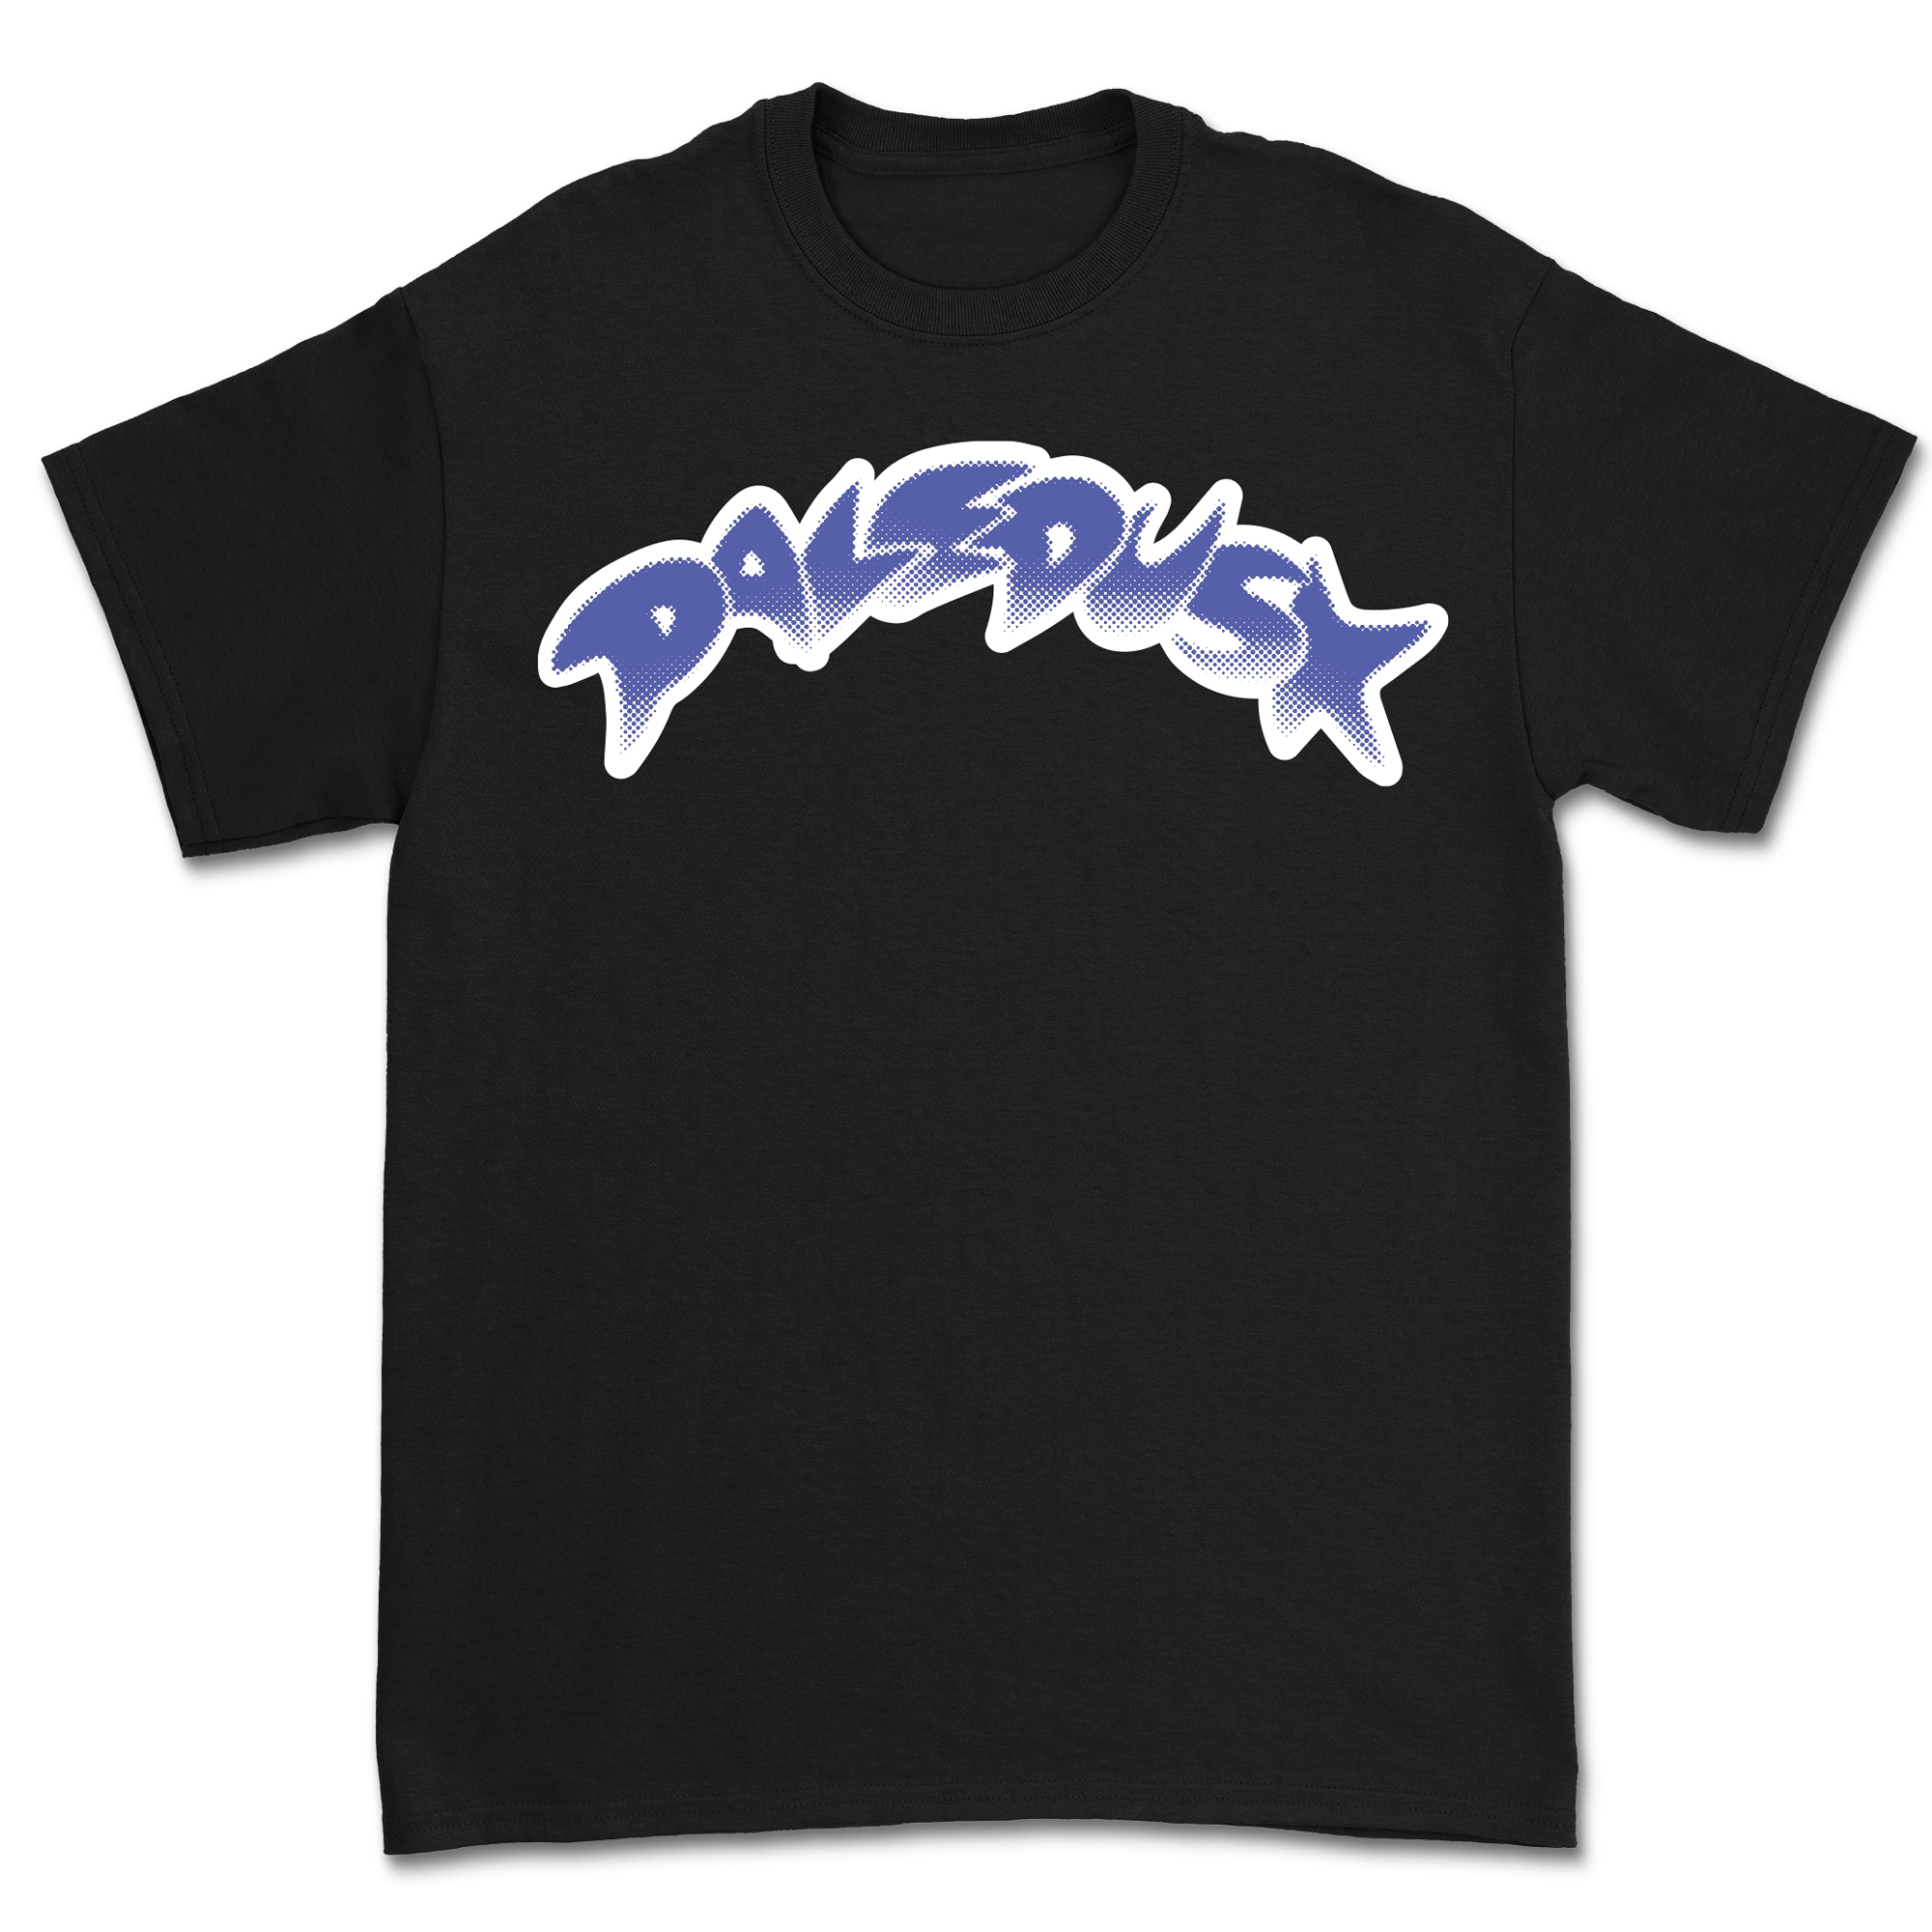 Paledusk - Ninja Shirt